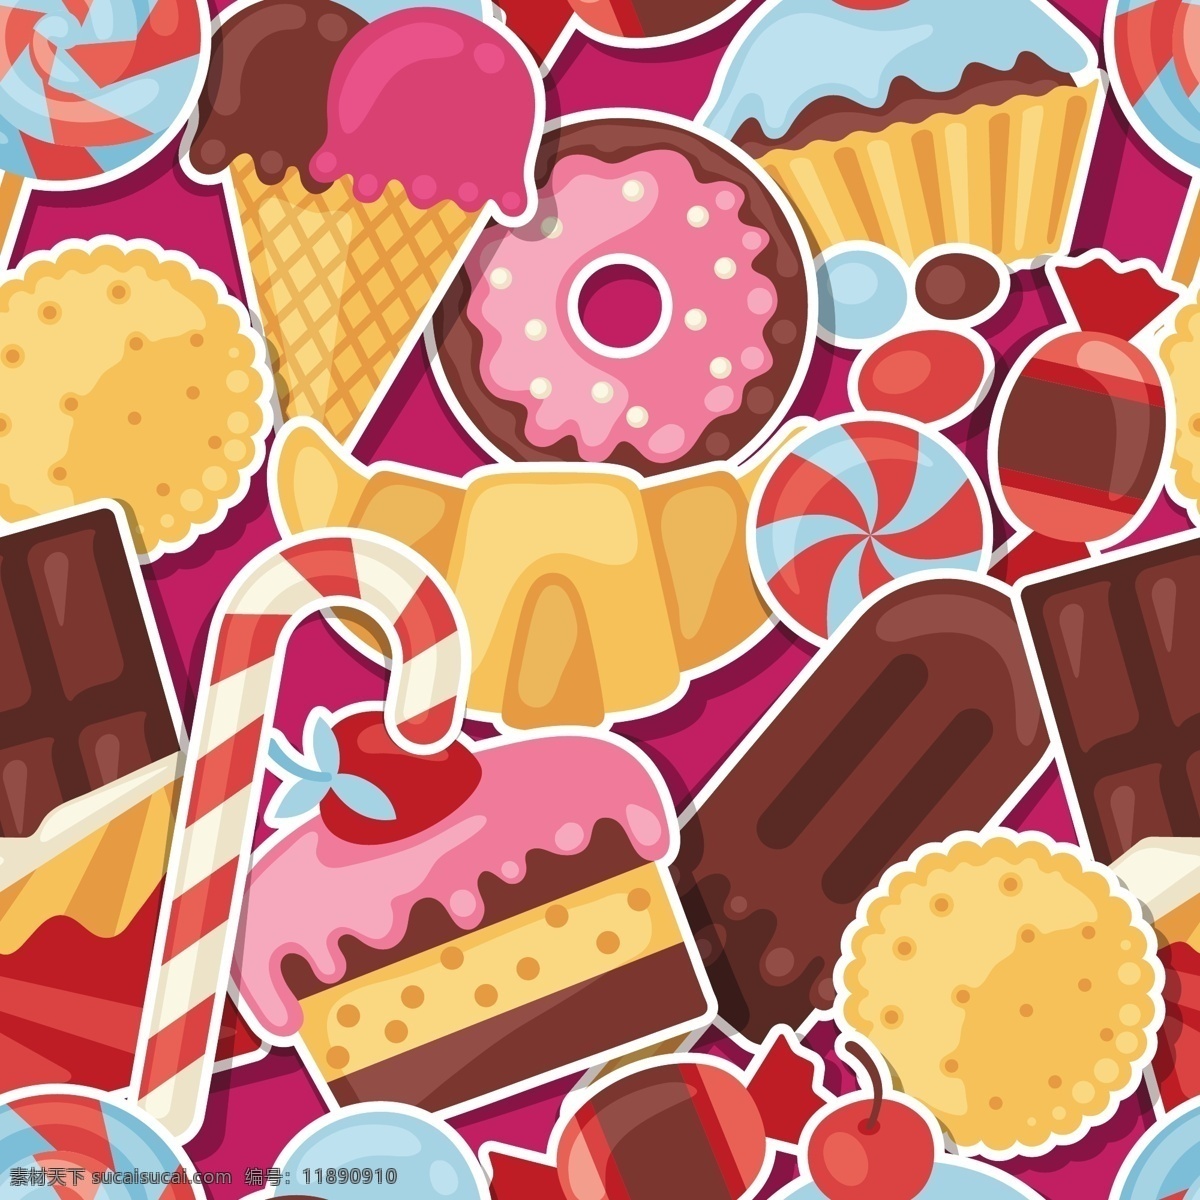 水果 糖果 可爱 卡通 甜点 矢量图 颜色 免费 背景素材 源文件 免费素材 贺卡背景 矢量 广告元素